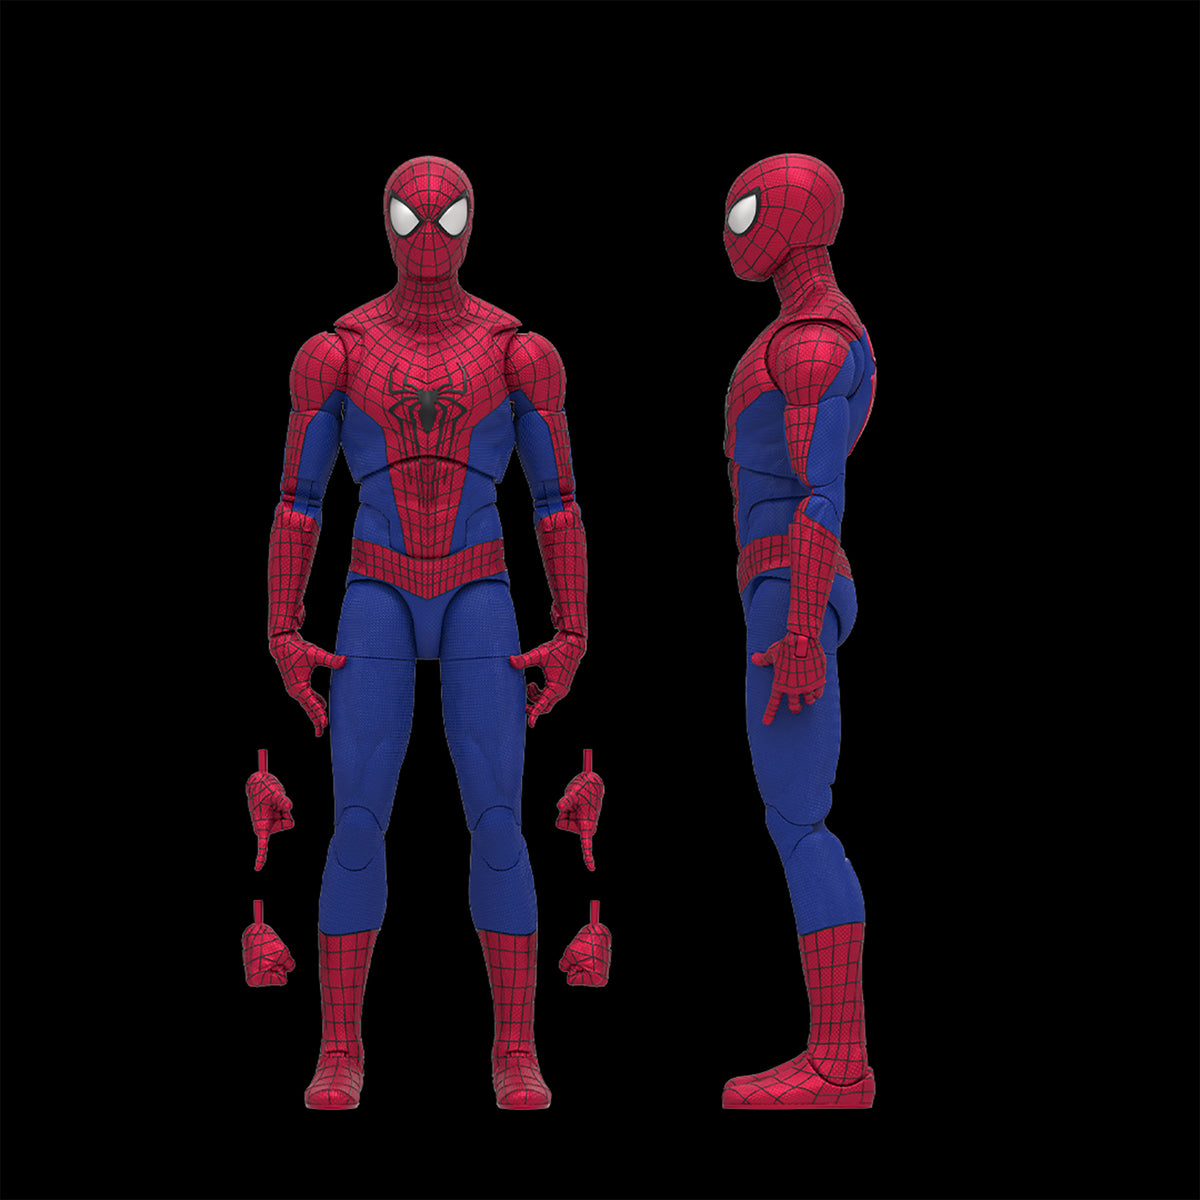  Marvel Legends Series Spider-Man, Spider-Man: No Way